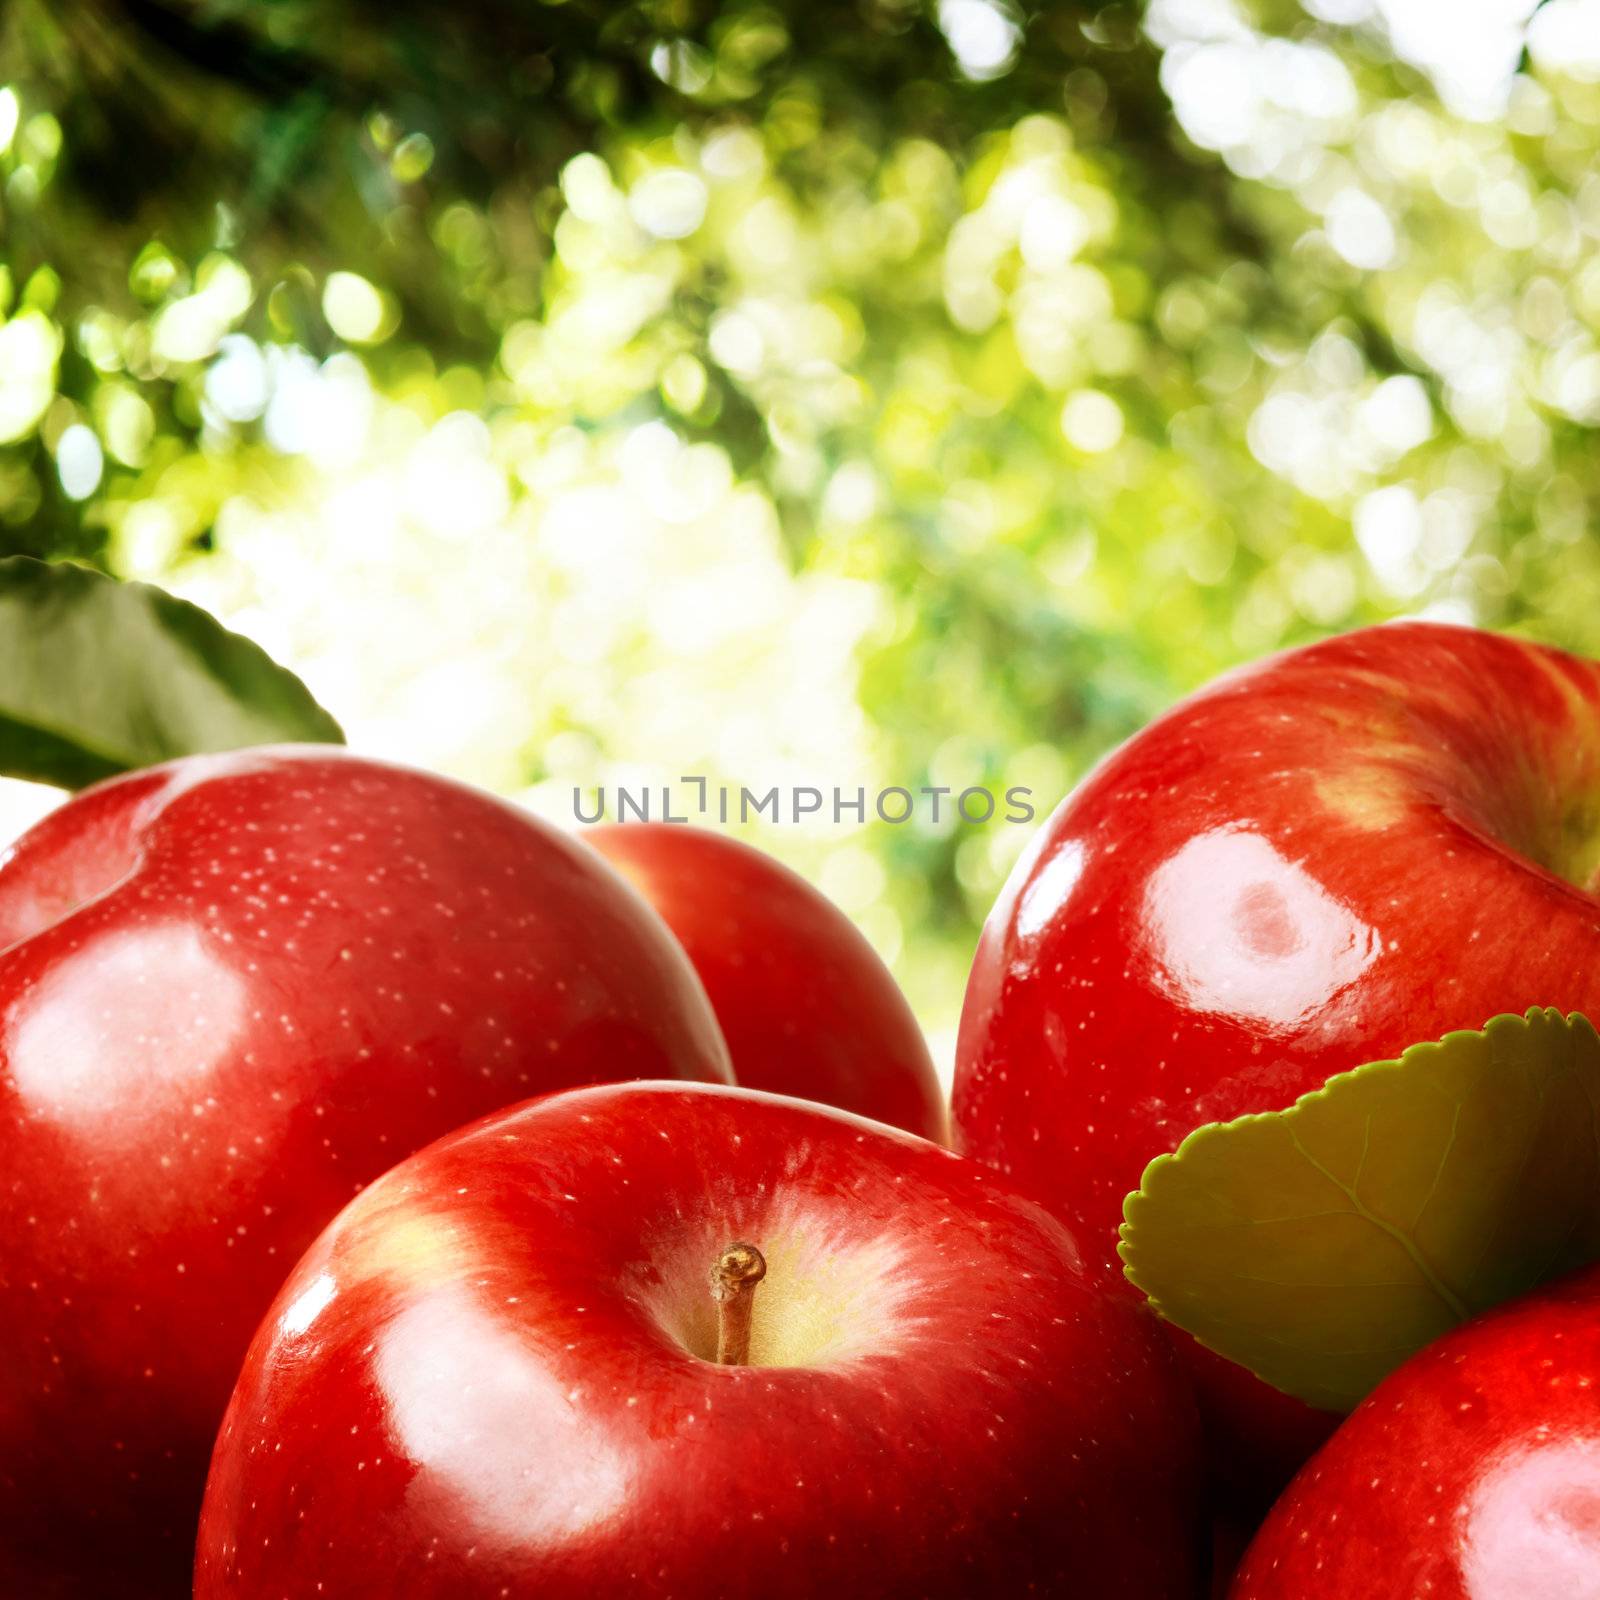 Apples outdoors by melpomene